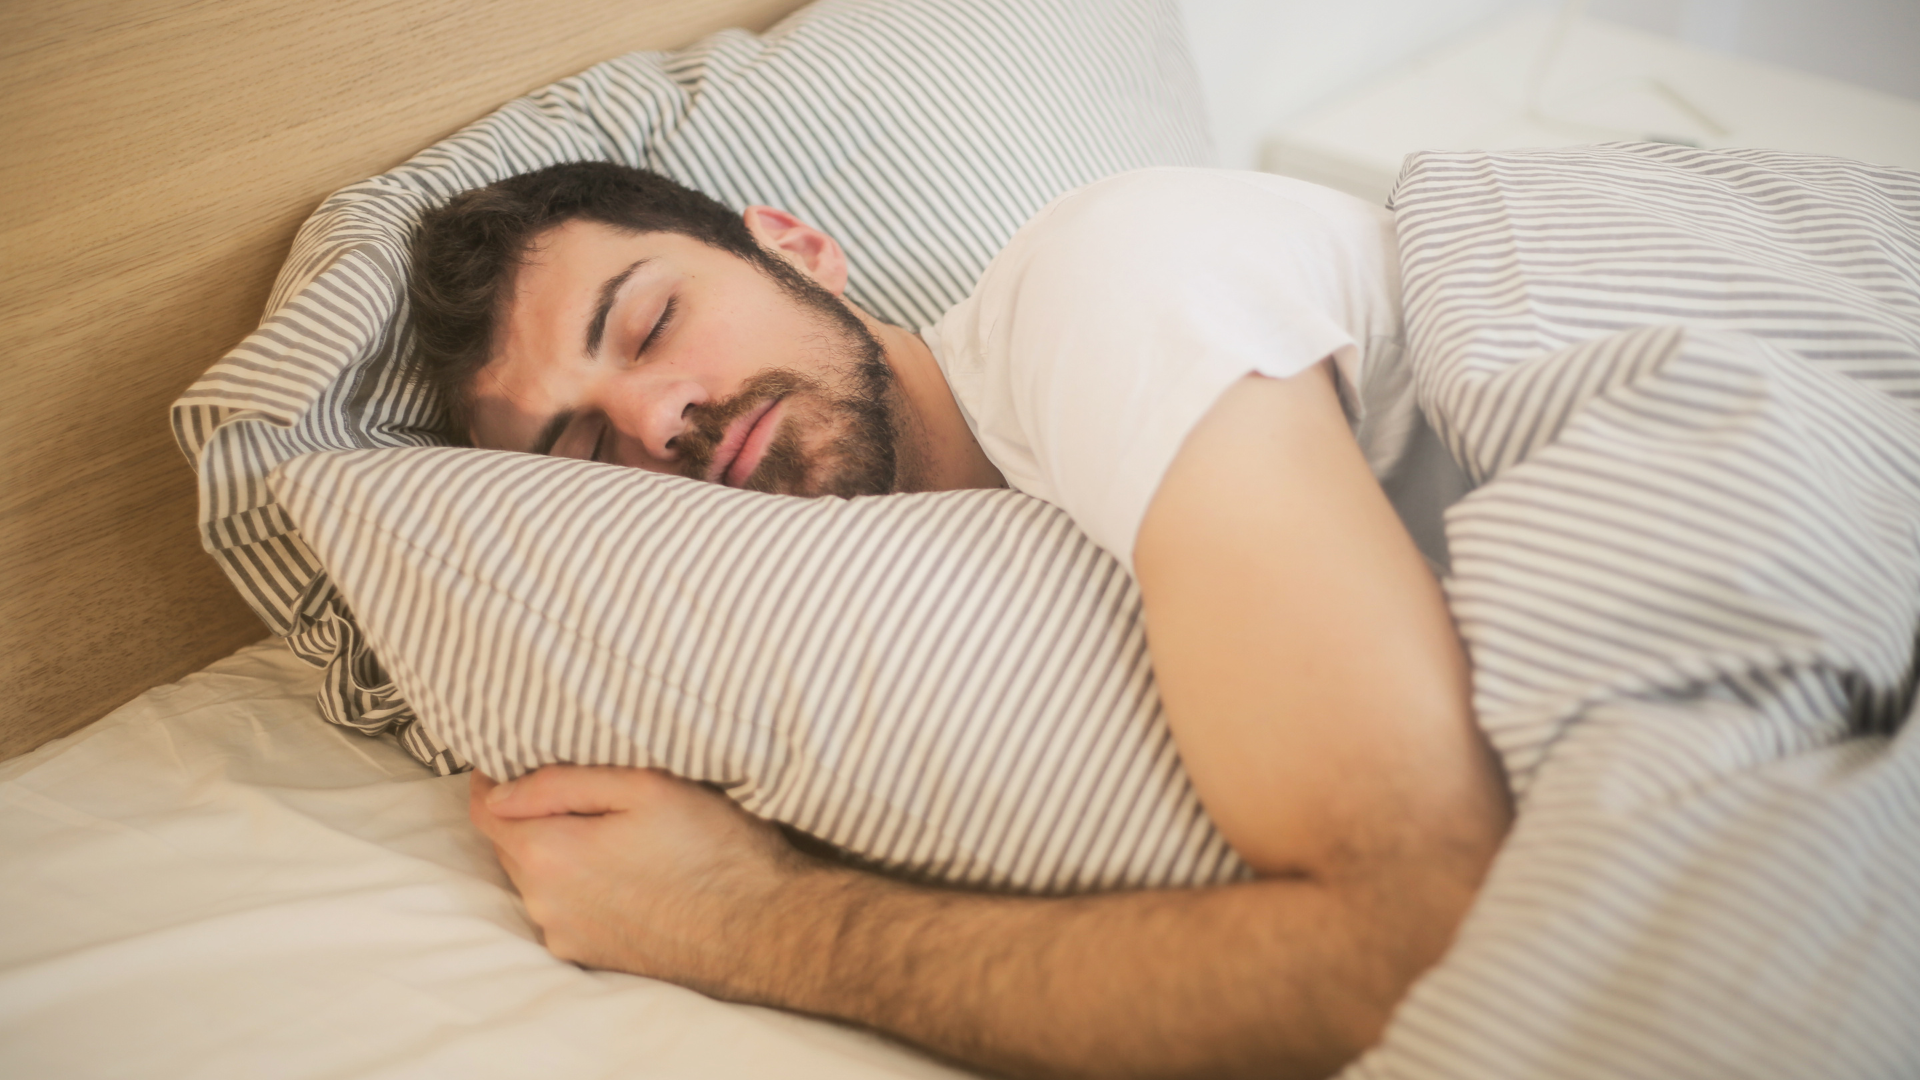 10 Best Snoring Hacks to Help You Get Better Sleep